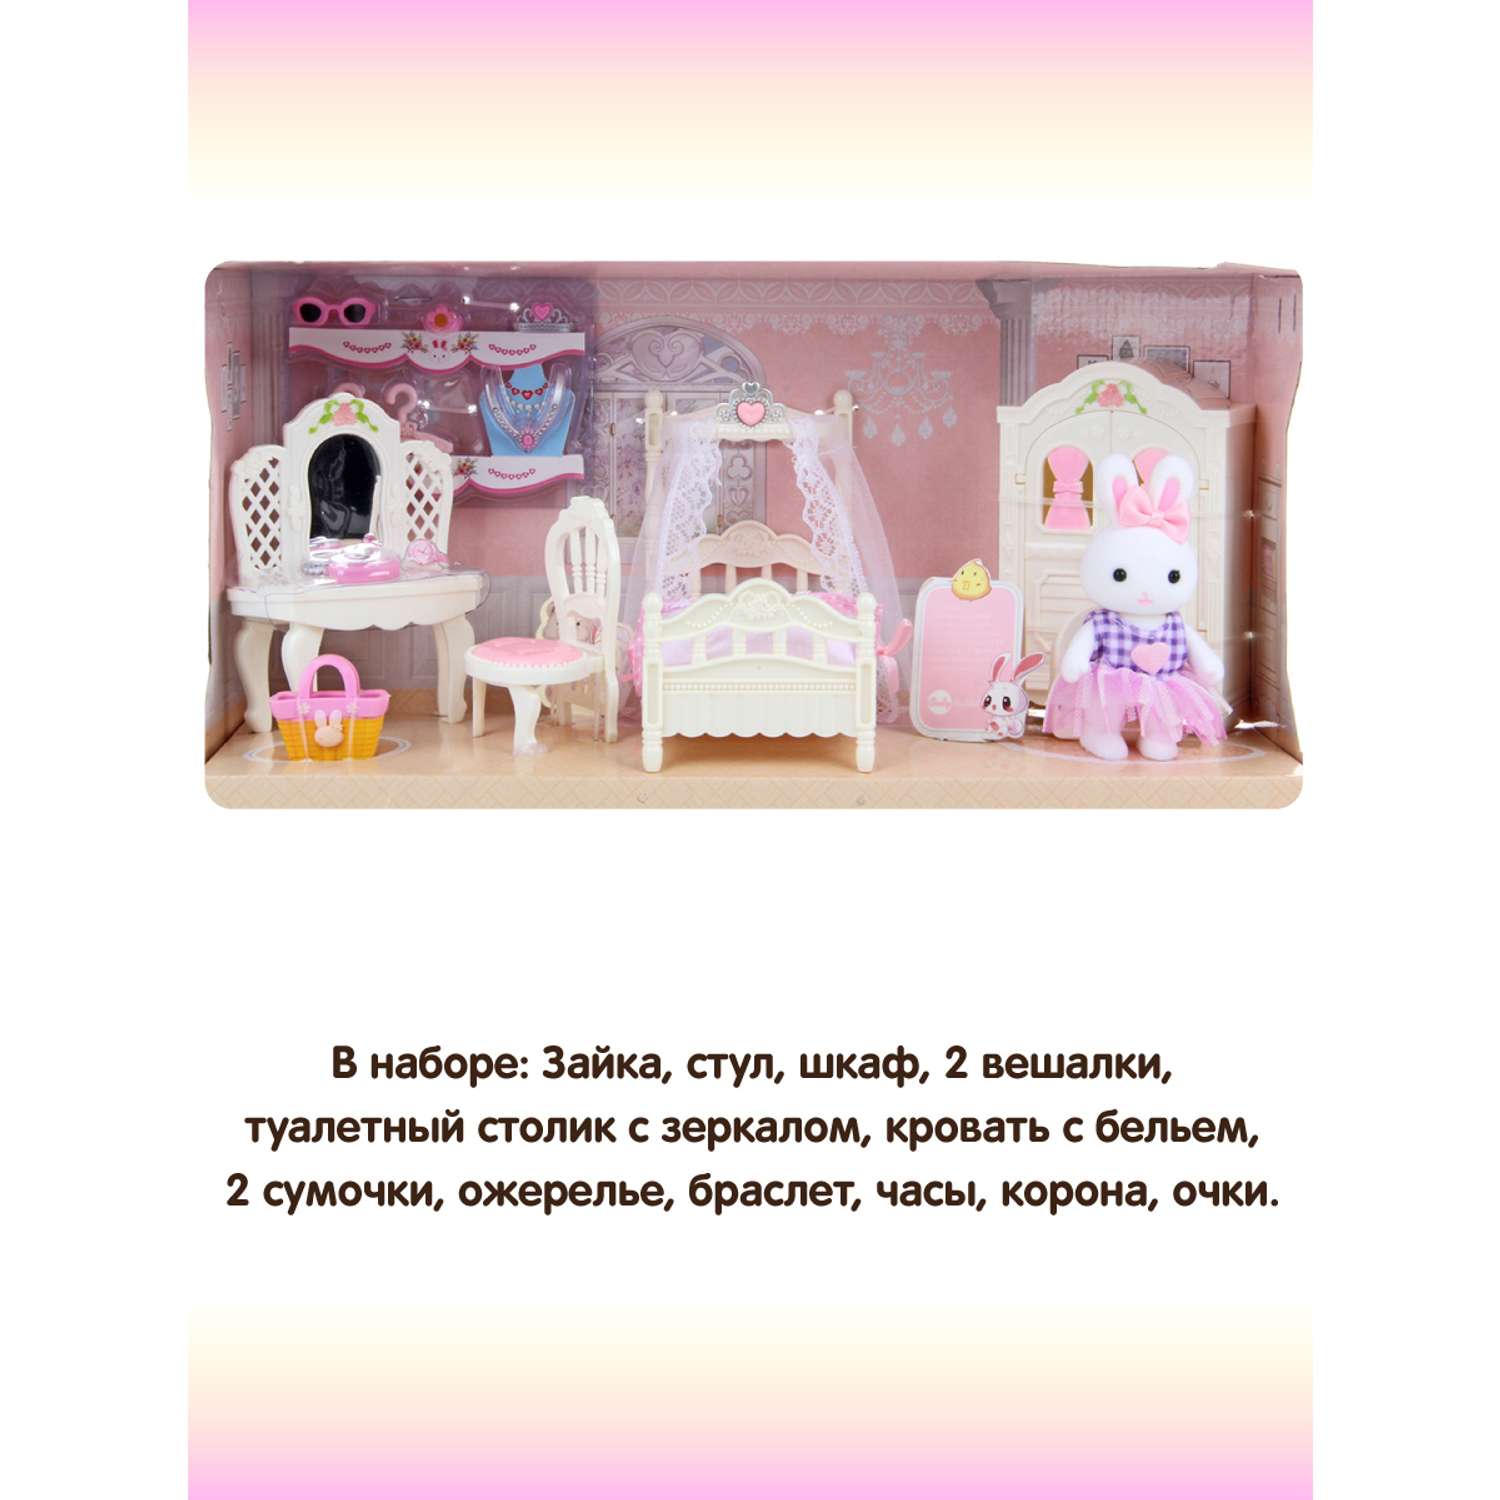 Мебель для кукол Veld Co зайка 15 предметов 113306 - фото 3